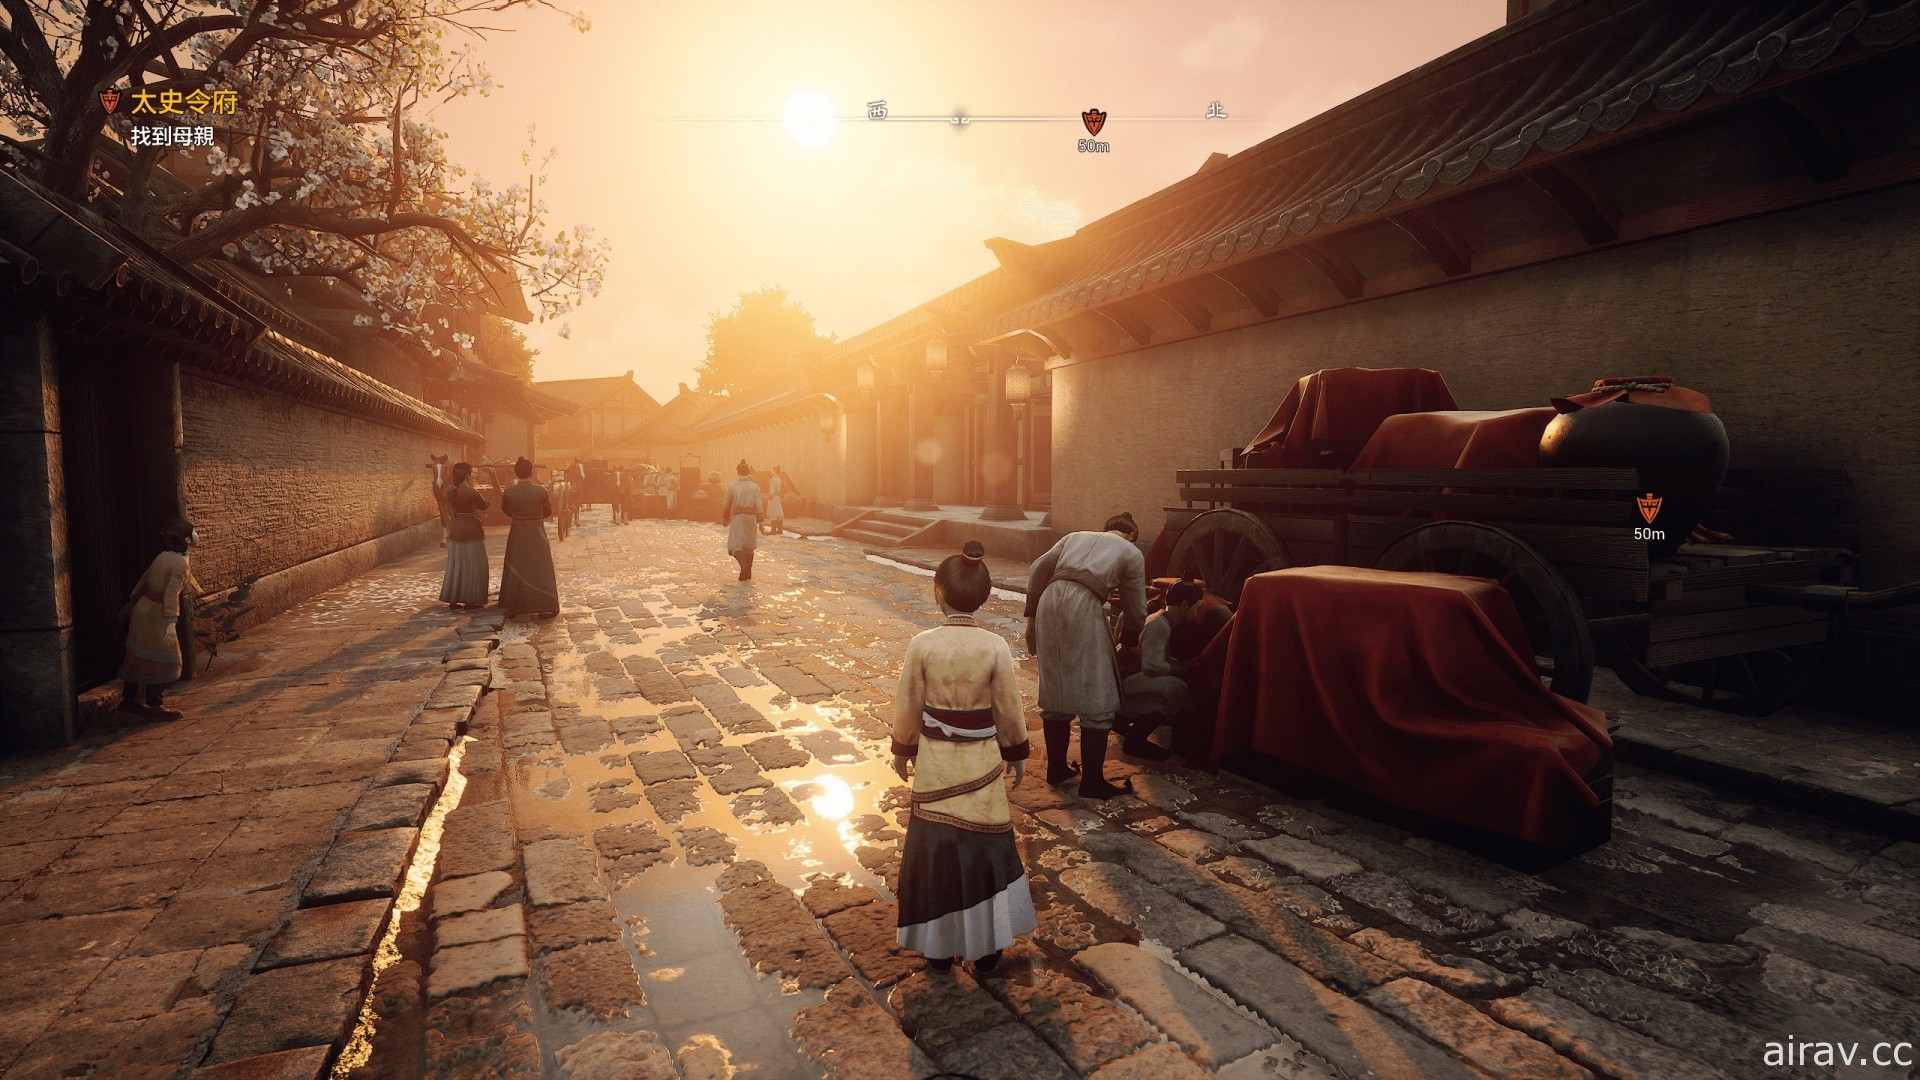 《軒轅劍柒》揭開遊戲發售相關日程 試玩版 10 月初搶先開放體驗